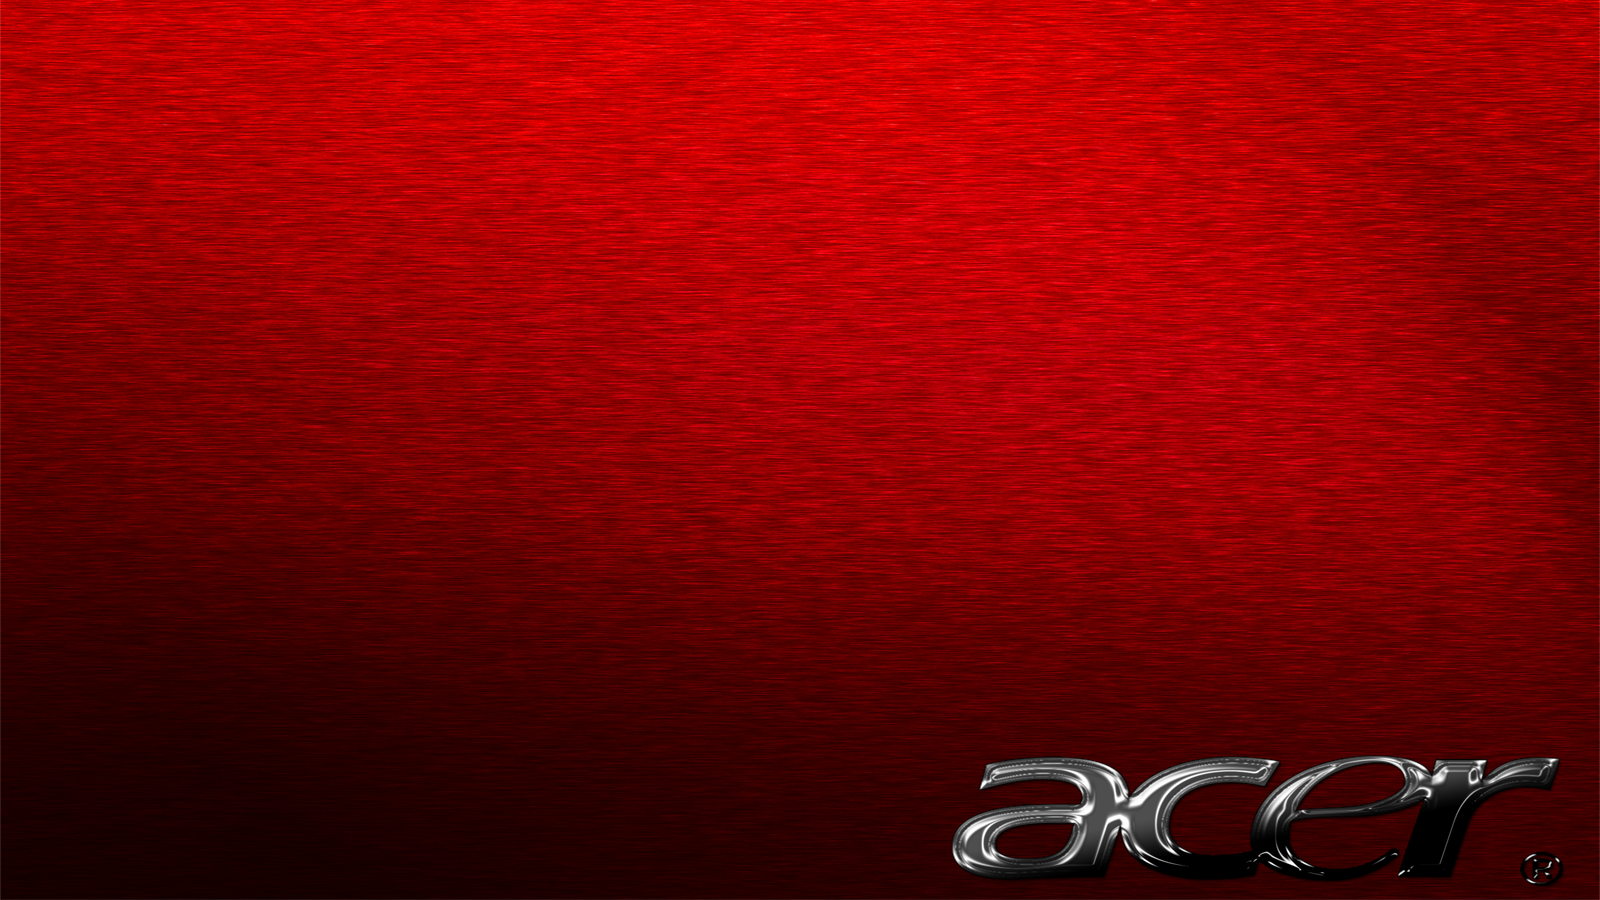 Acer Wallpaper Background Image Kamistad Celebrity Pictures Portal